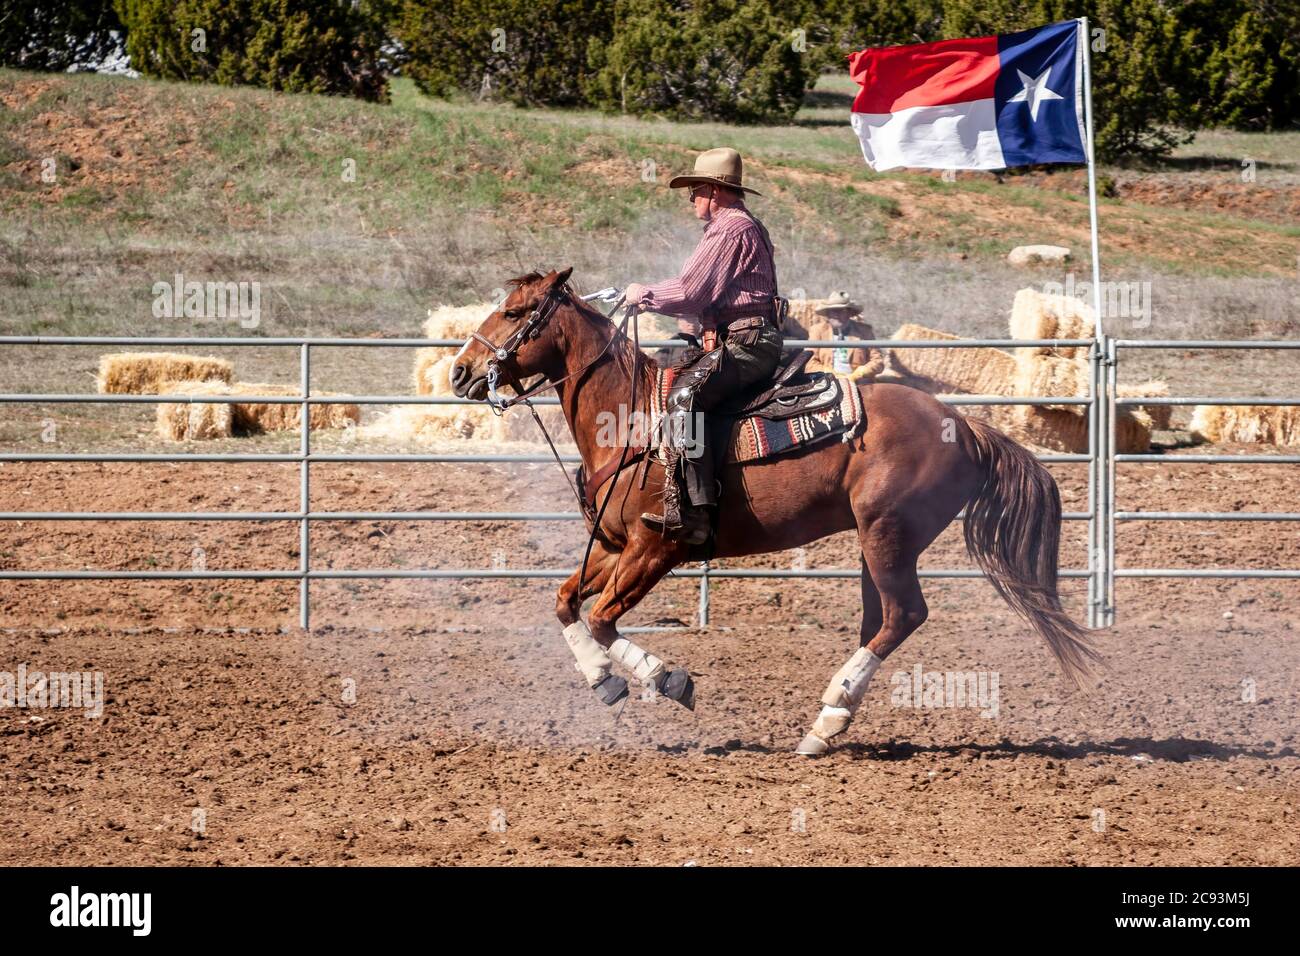 Cowboy mit Gewehr auf Pferd, beritten Schießwettbewerb, Ende der Trail Wildwest-Jubiläum, in der Nähe von Albuquerque, New Mexico, Vereinigte Staaten Stockfoto